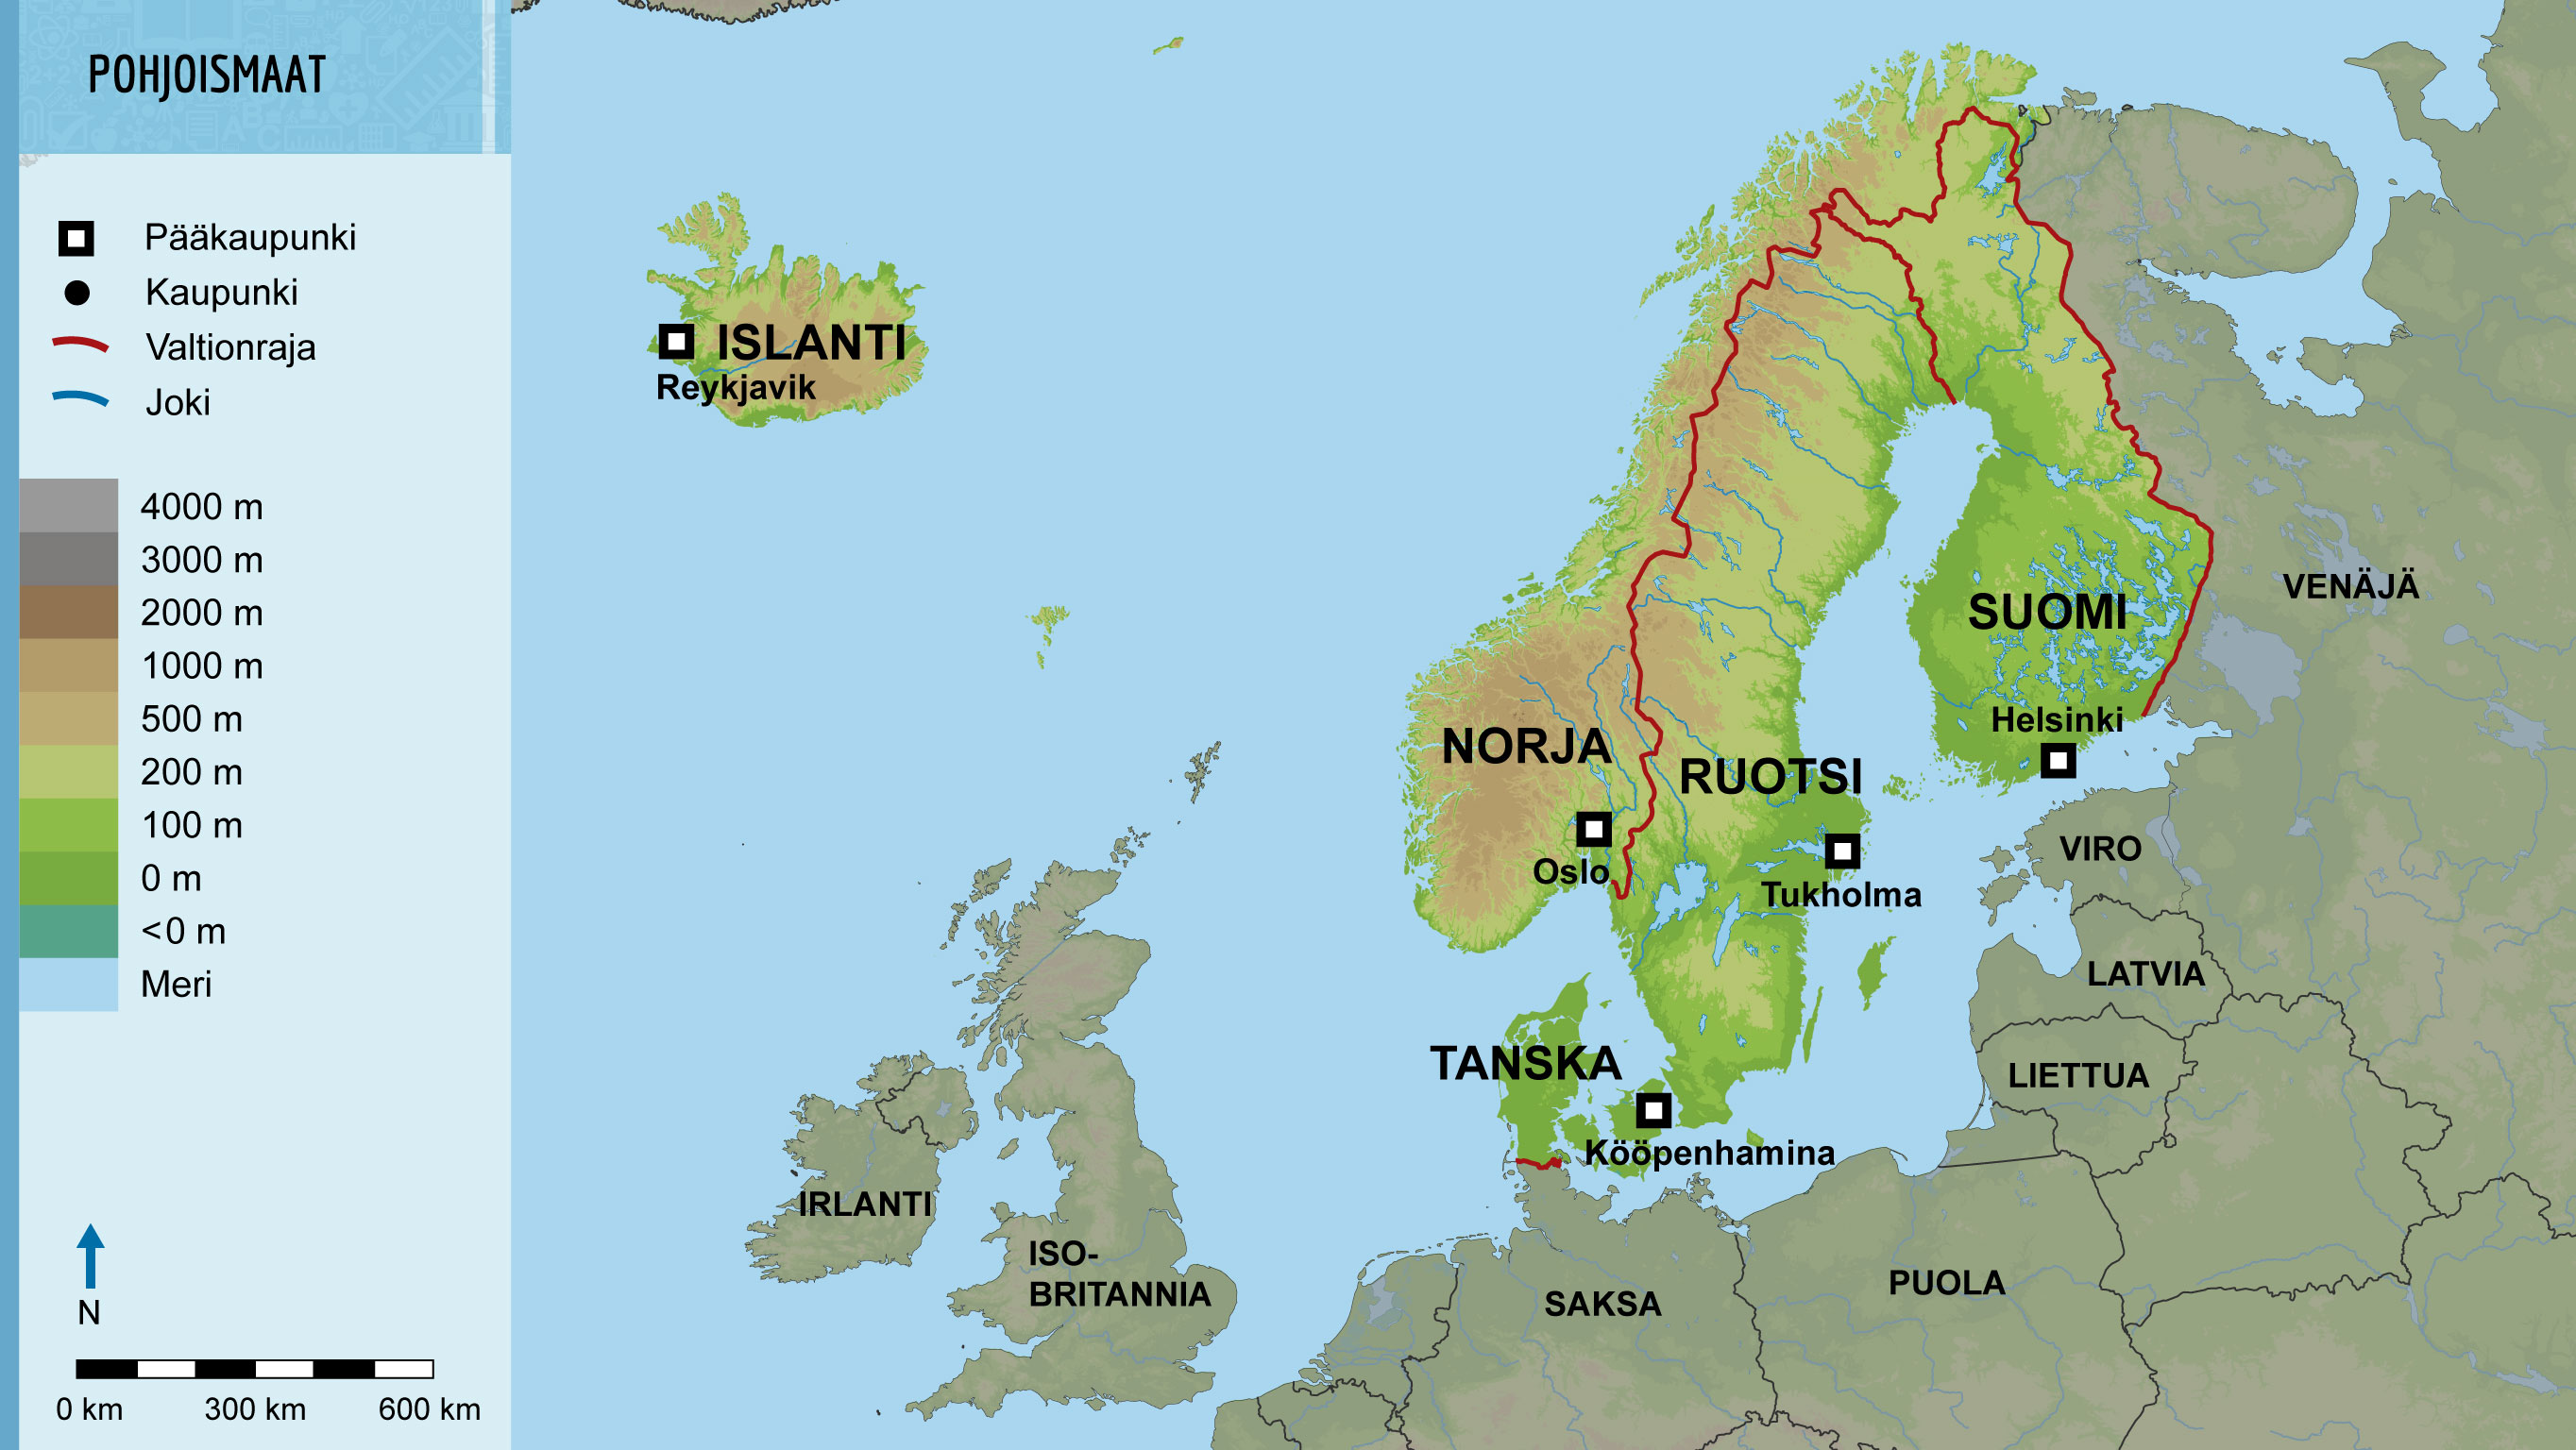 Pohjoismaiden kartta